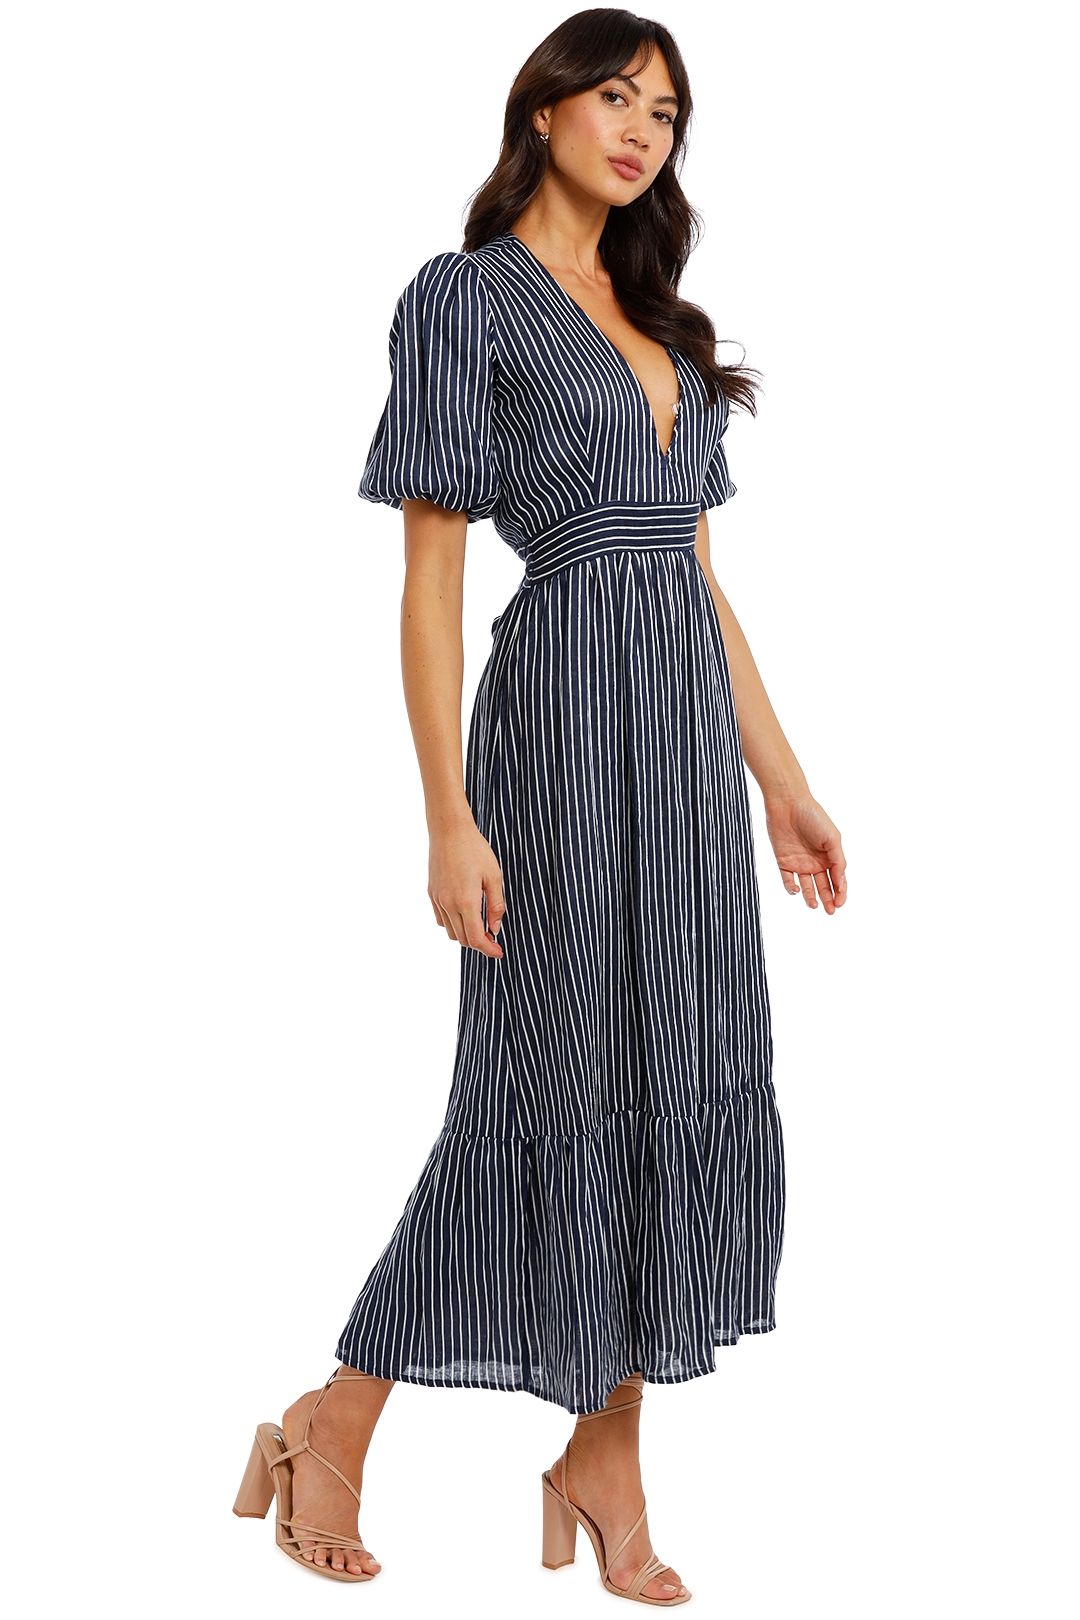 Faithfull Romilla Midi Dress stripe